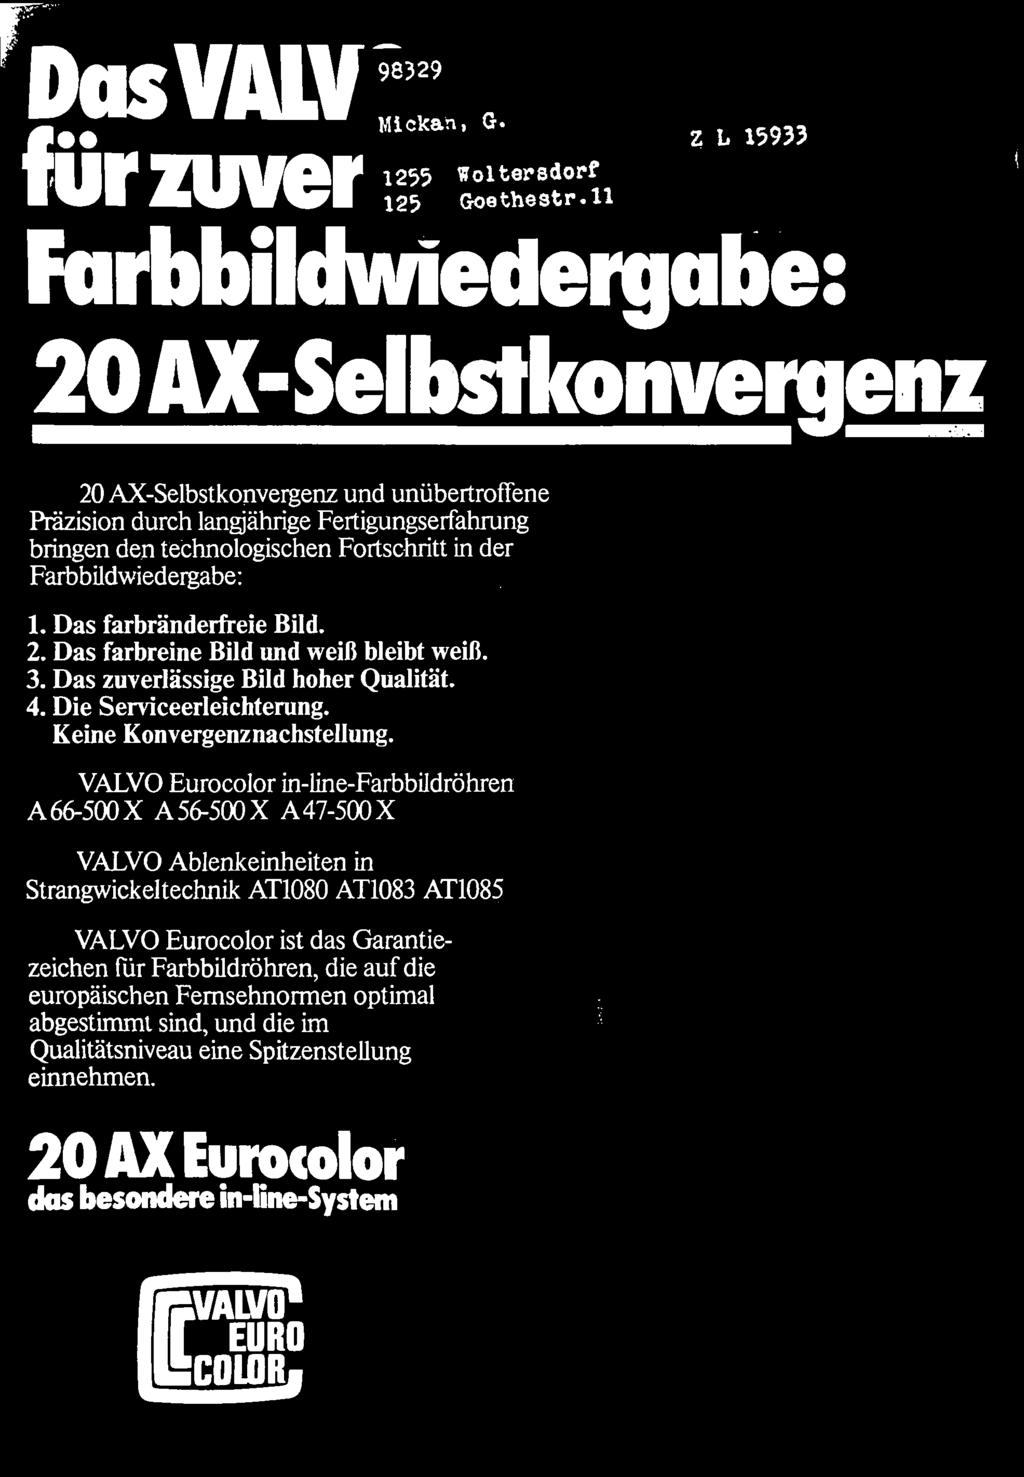 VALVO Eurocolor in-line-farbbildröhren A 66-500 X A 56-500 X A 47-500 X VALVO Ablenkeinheiten in Strangwickeltechnik AT1080 AT1083 AT1085